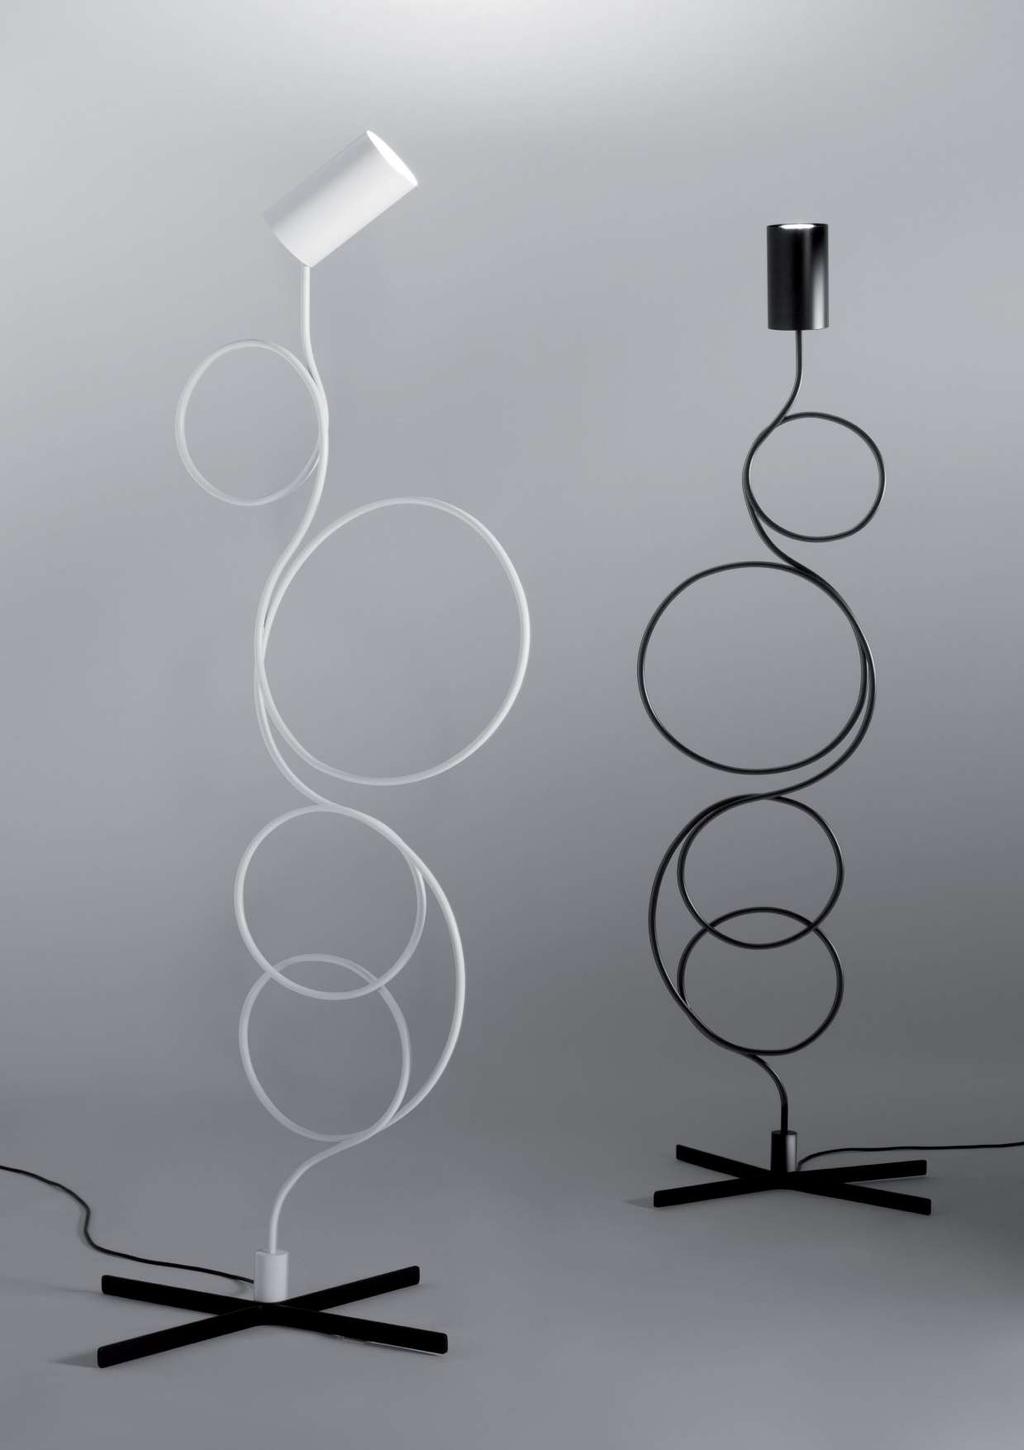 VIOLINO design Gabi-Peretto 2017 Collezione di lampade in tubo metallico curvato, che crea uno sviluppo formale leggero e armonico. Materiali: metallo Finiture: Bianco opaco, nero opaco, ottone.